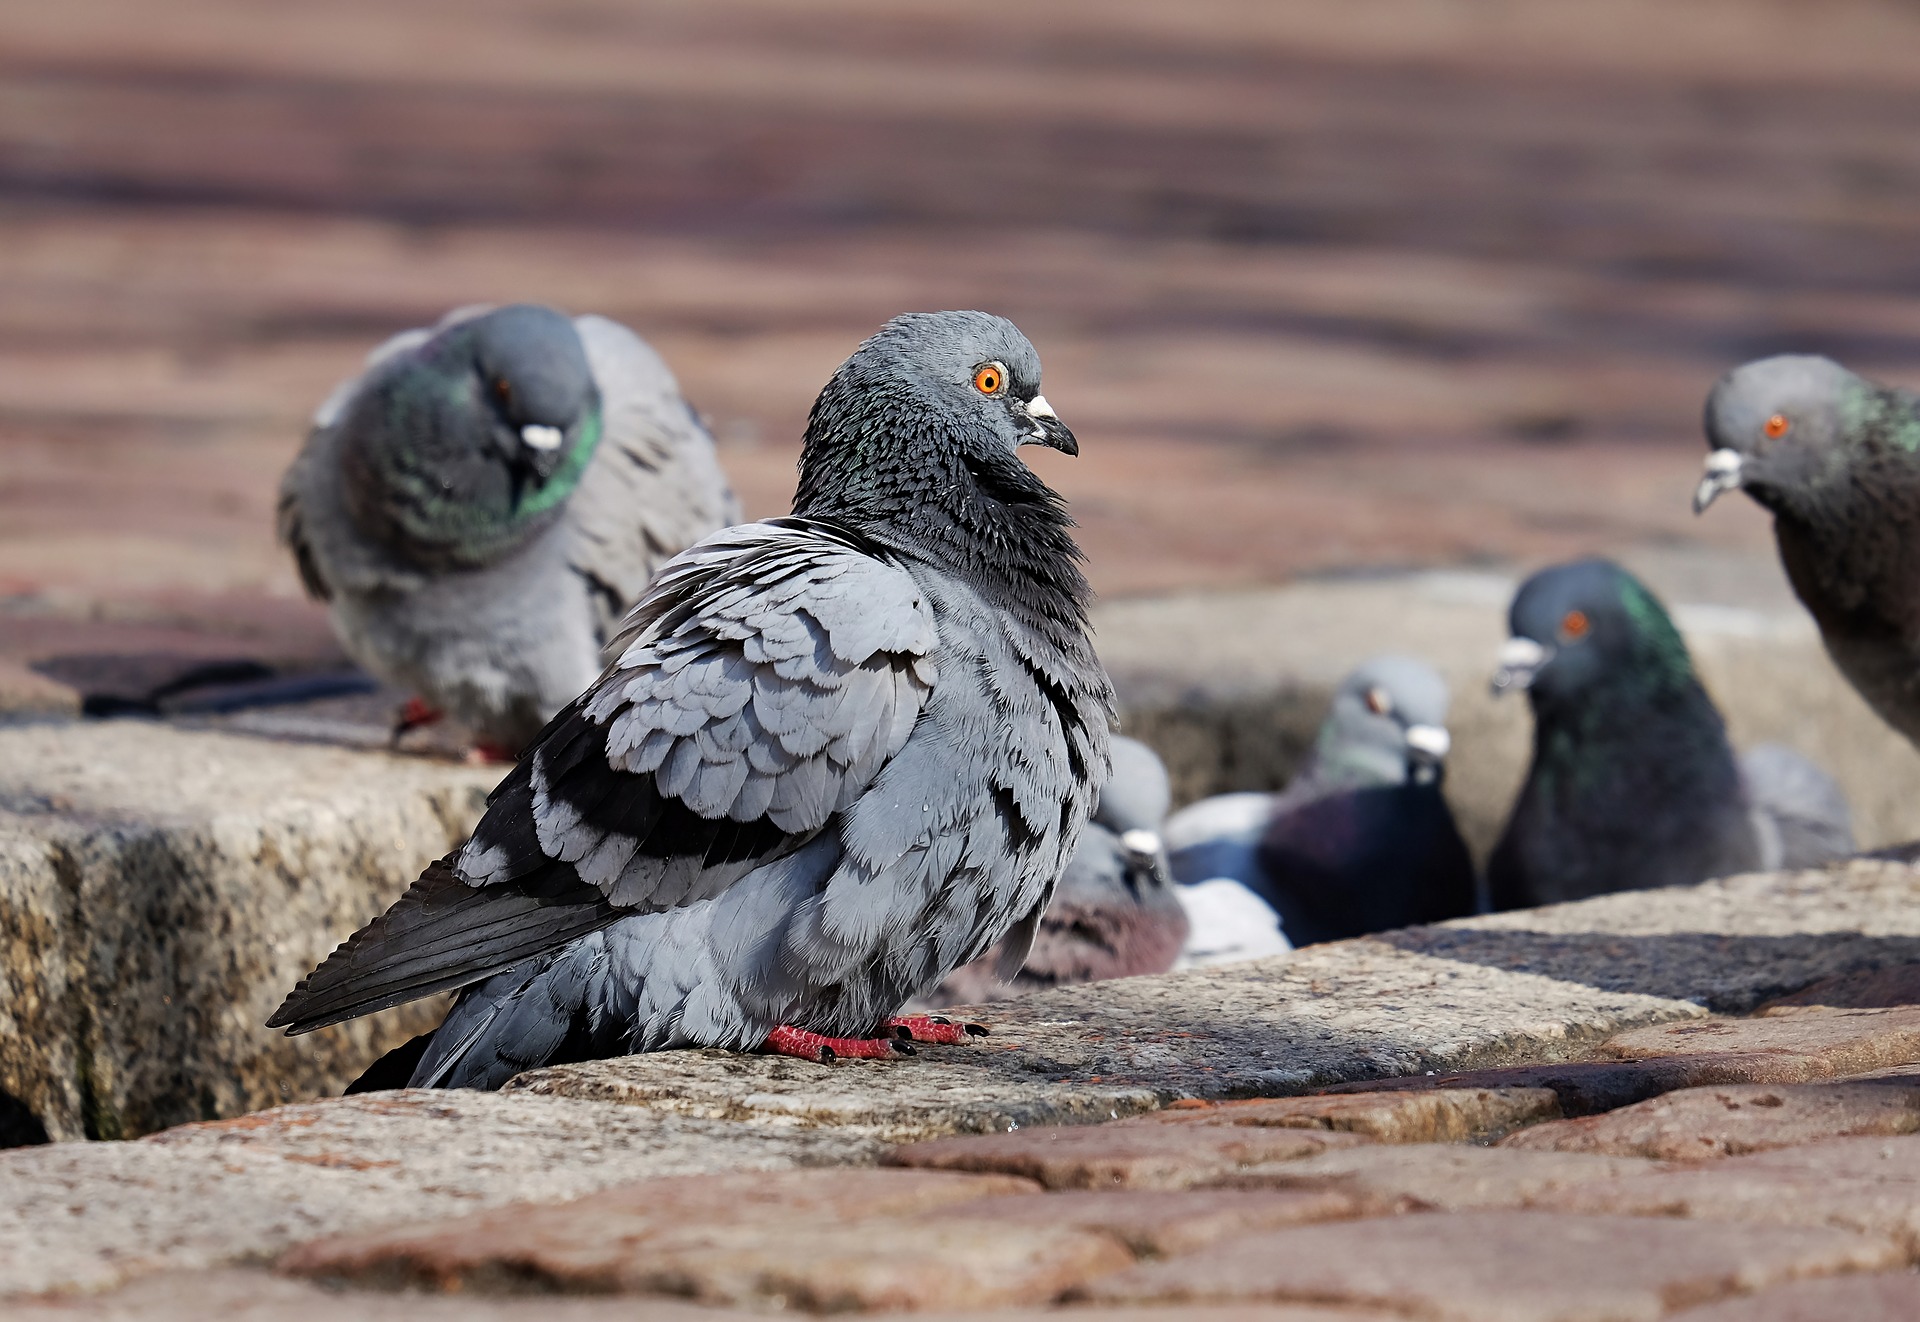 Japon : Un taximan tue un pigeon et se fait arrêter